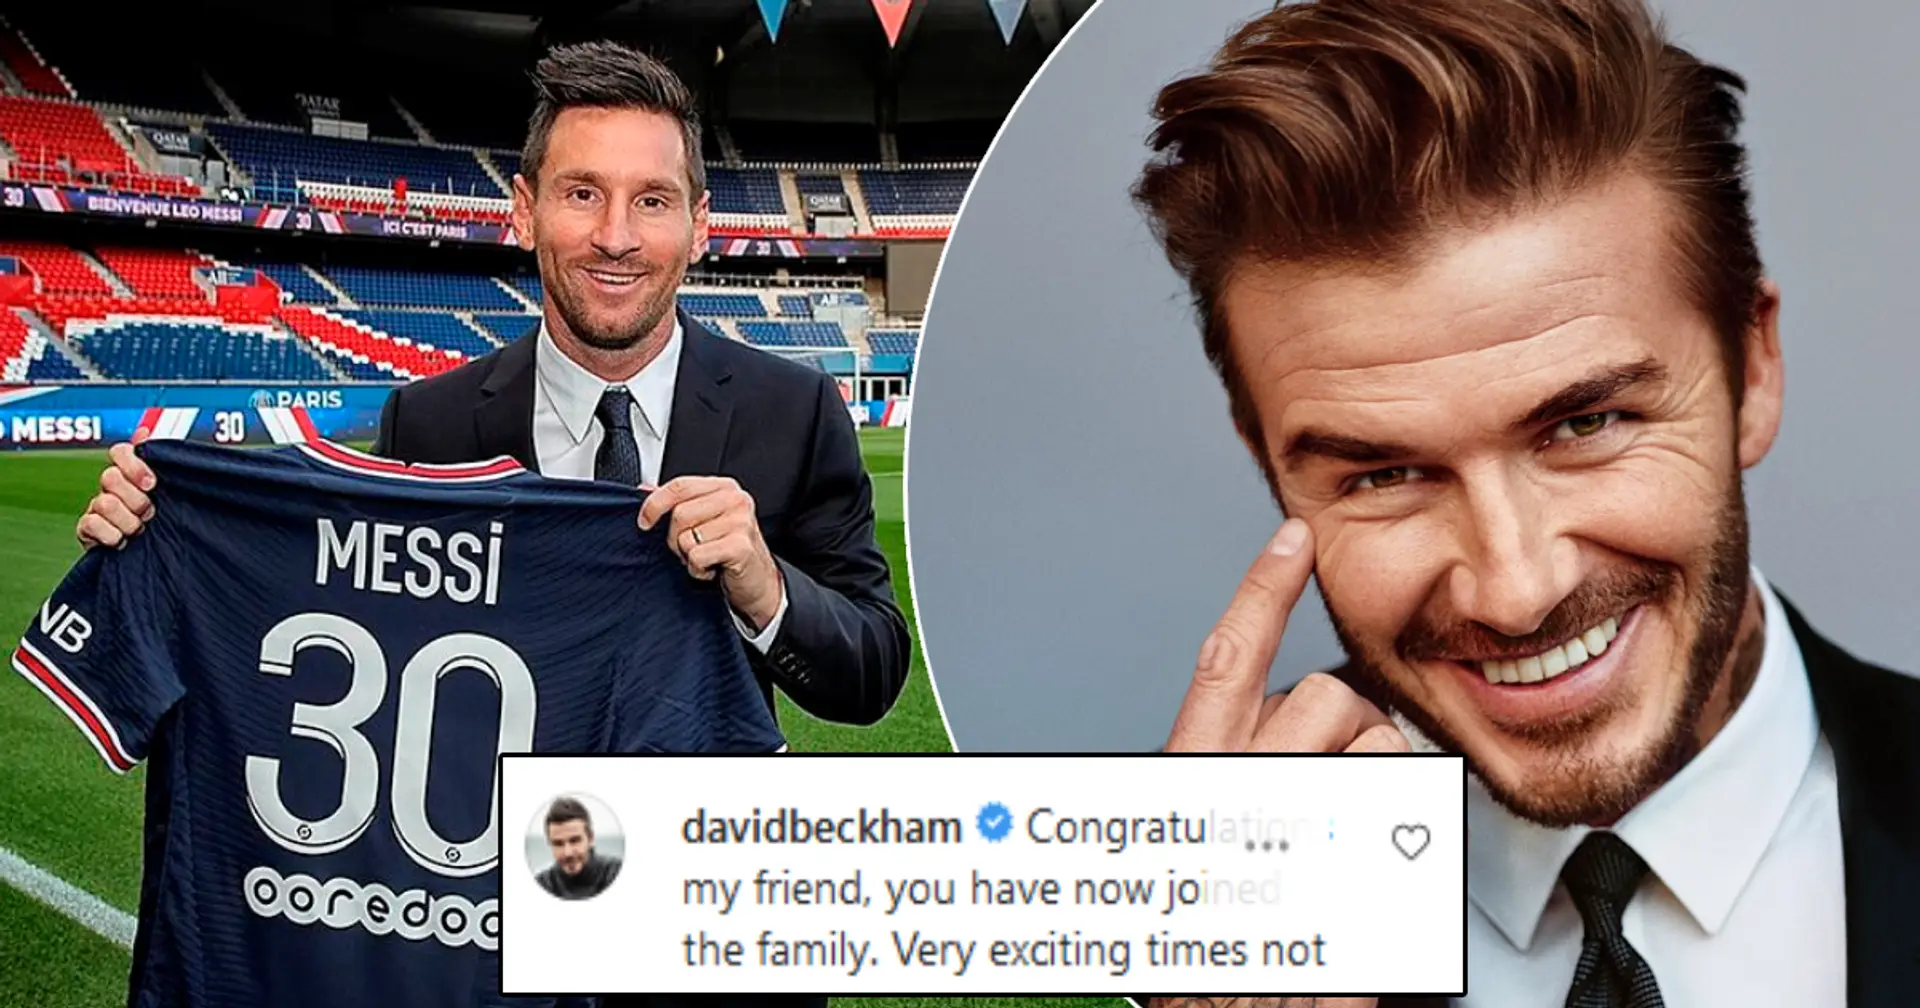 "Une période passionnante pour la France": Beckham mène le cortège de légendes et de stars accueillant Messi au PSG sur Instagram